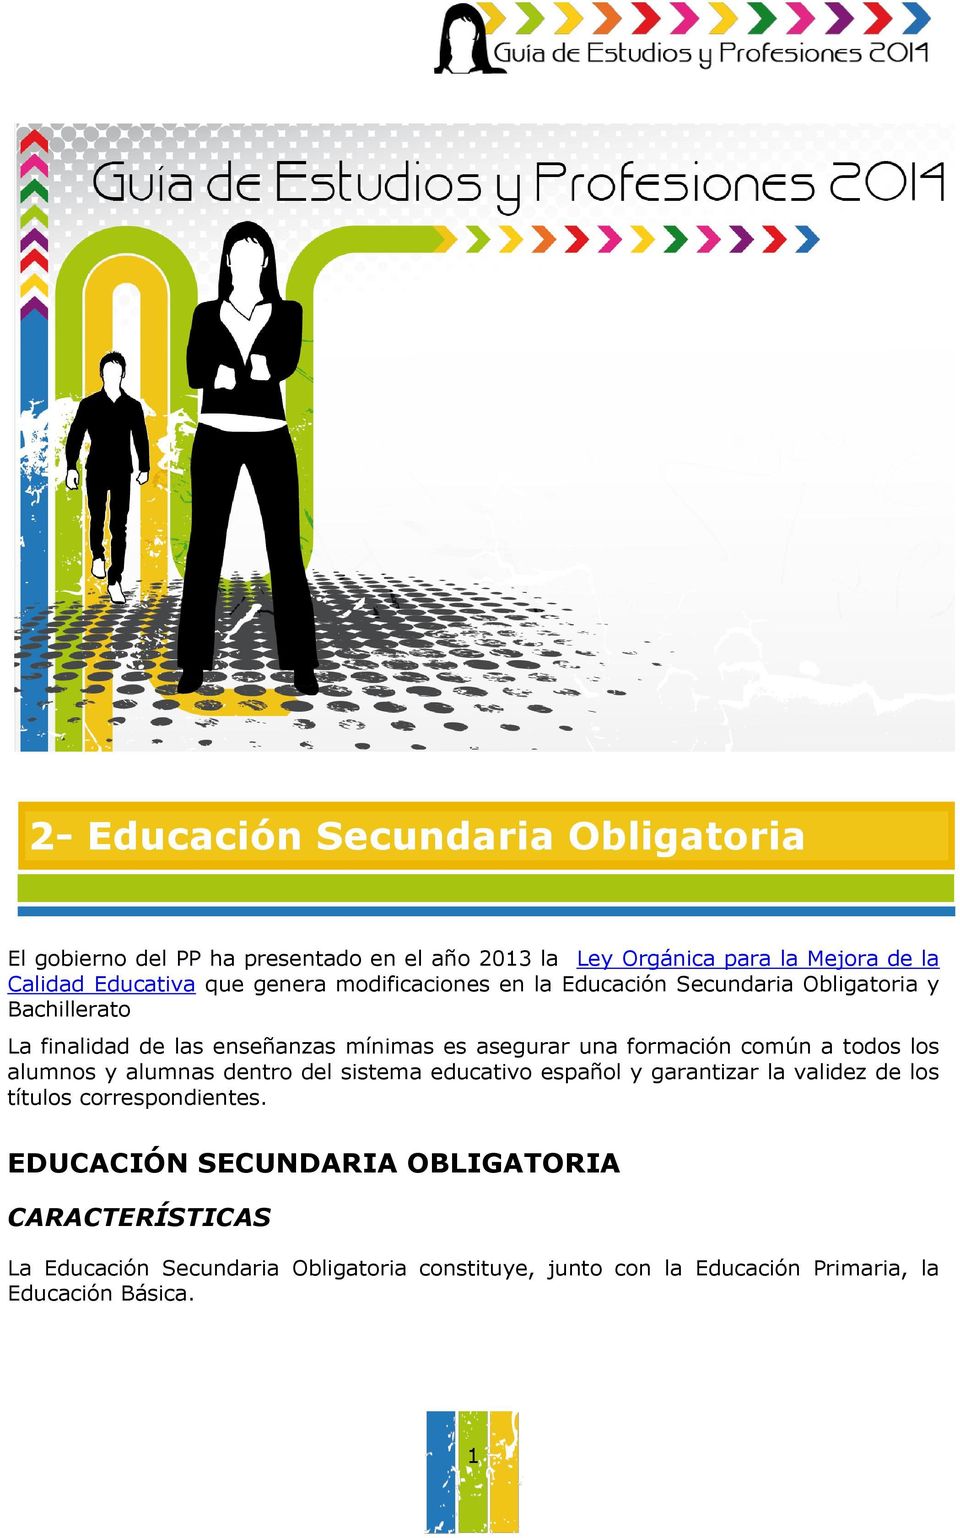 formación común a todos los alumnos y alumnas dentro del sistema educativo español y garantizar la validez de los títulos correspondientes.